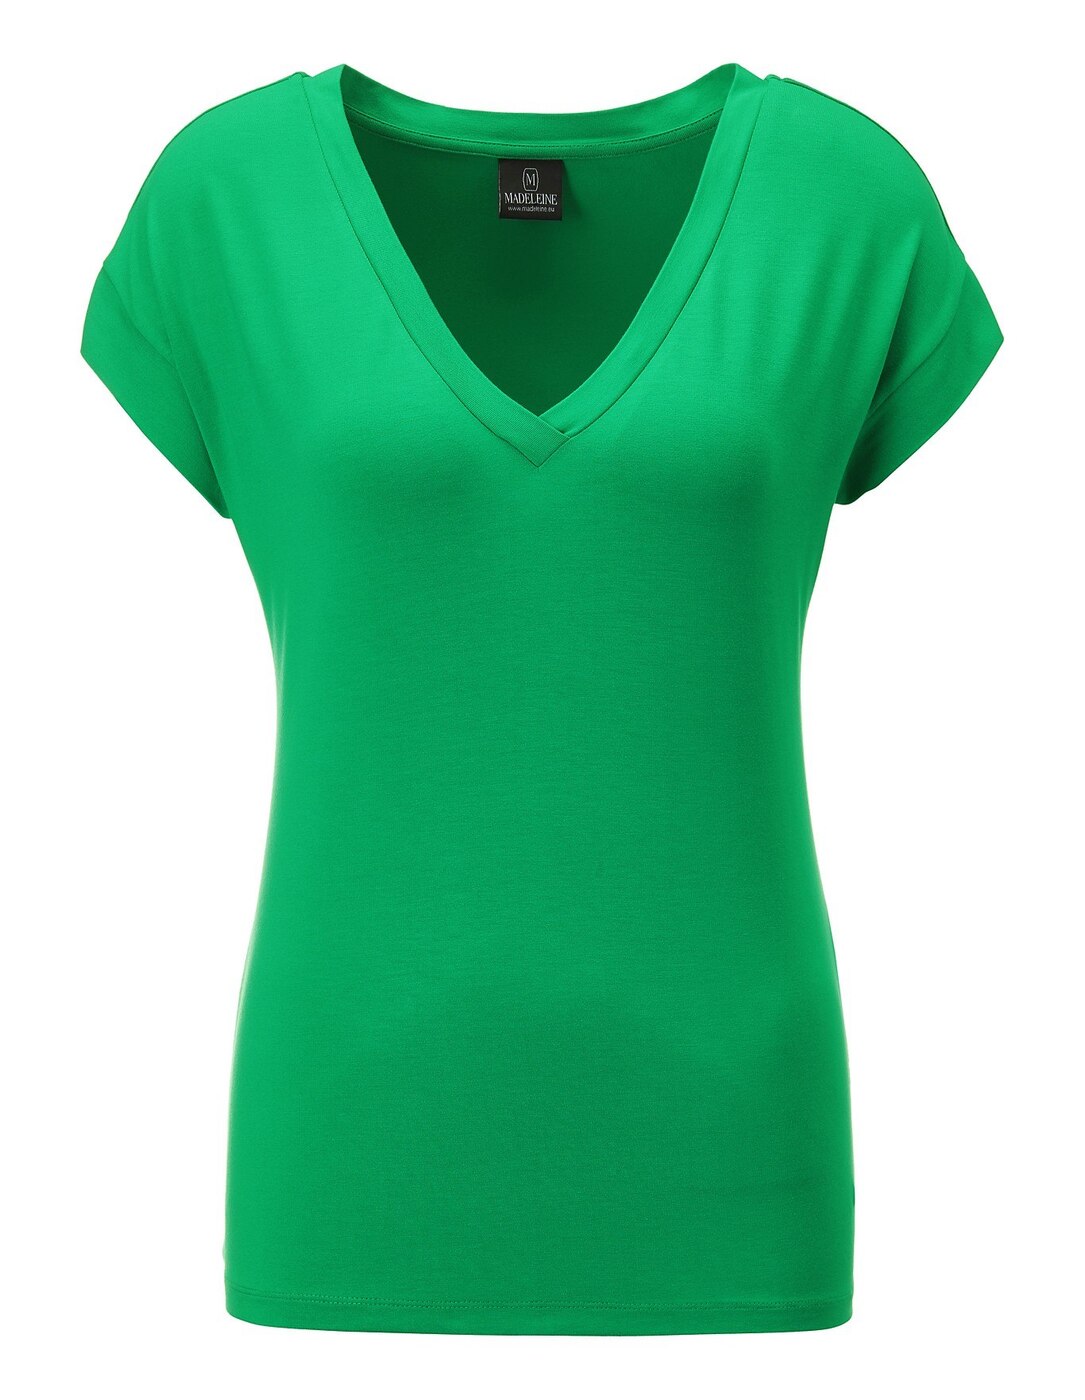 Стрейч валберис. Футболка зеленый. Зелёная футболка женская. Салатовая футболка. Салатовая майка.